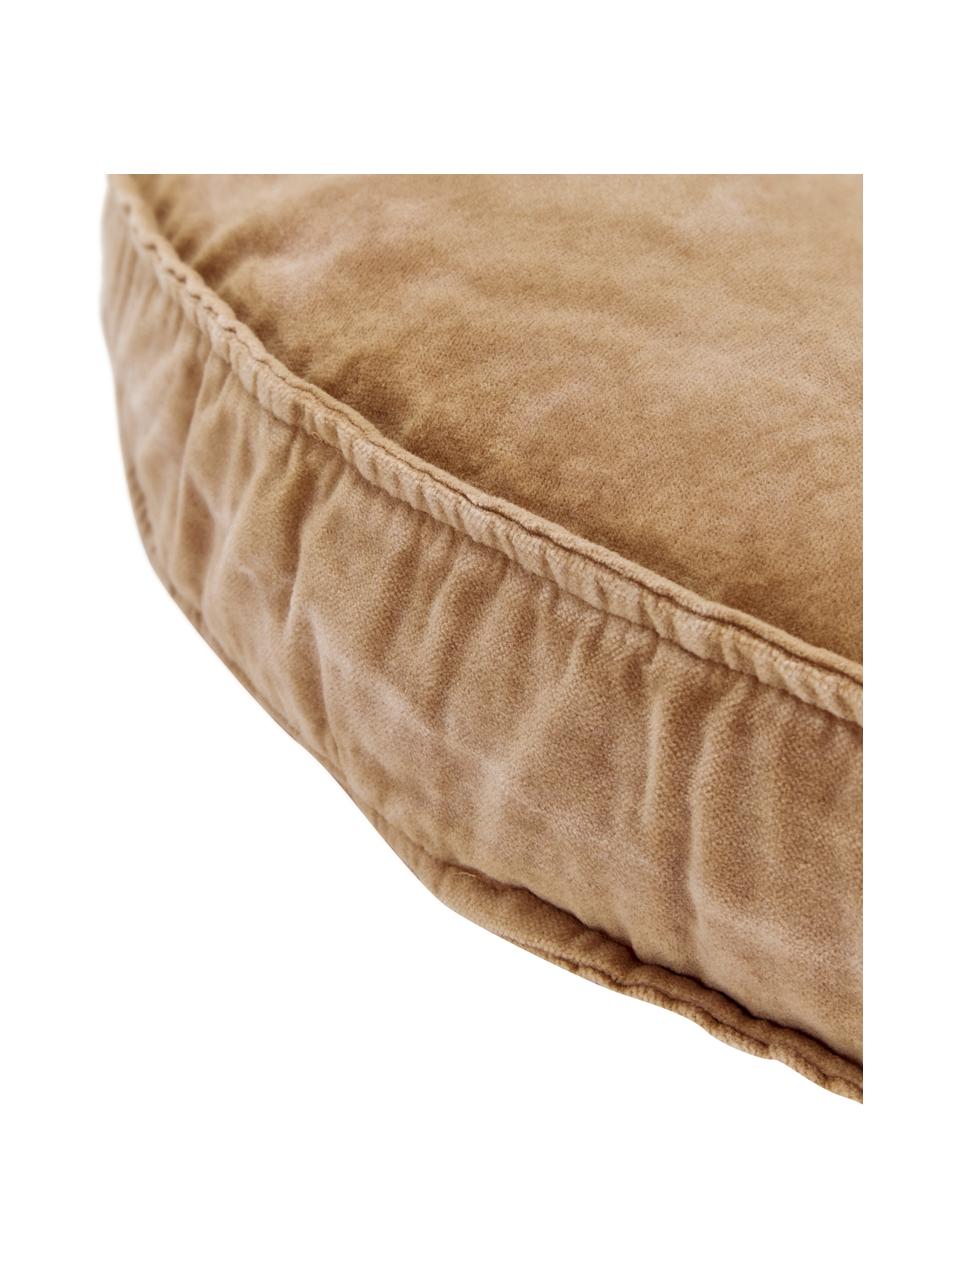 Grosses Samt-Sitzkissen Runda, Vorderseite: Baumwollsamt, Rückseite: 100% Baumwolle, Sandfarben, Ø 60 x H 6 cm